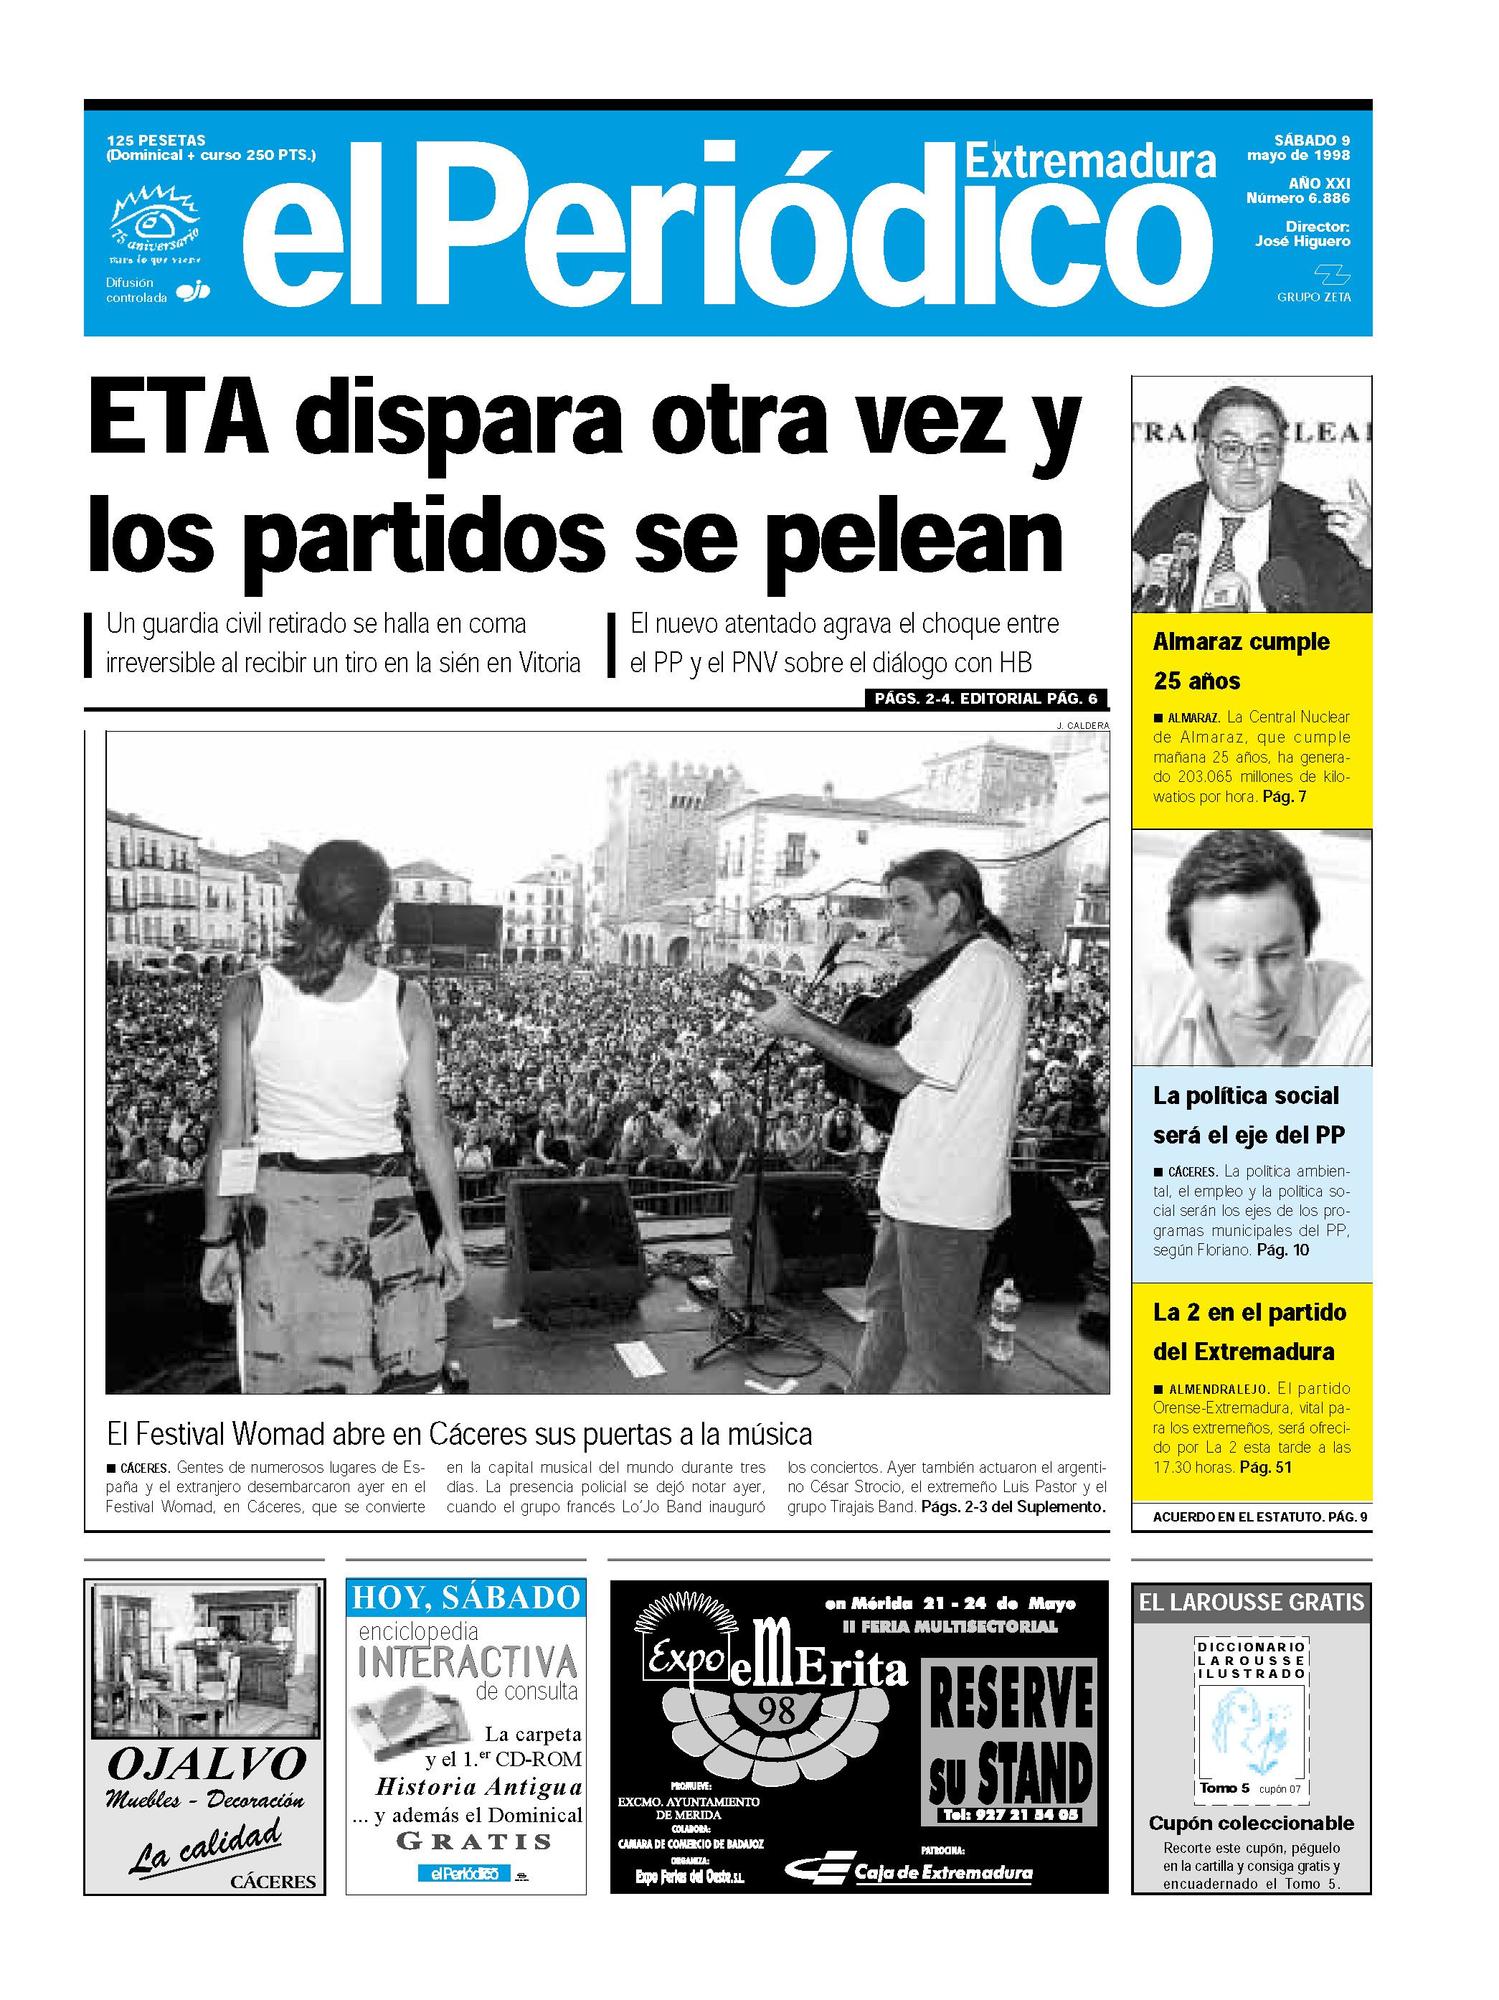 Portada de El Periódico Extremadura el 9 de mayo de 1998.